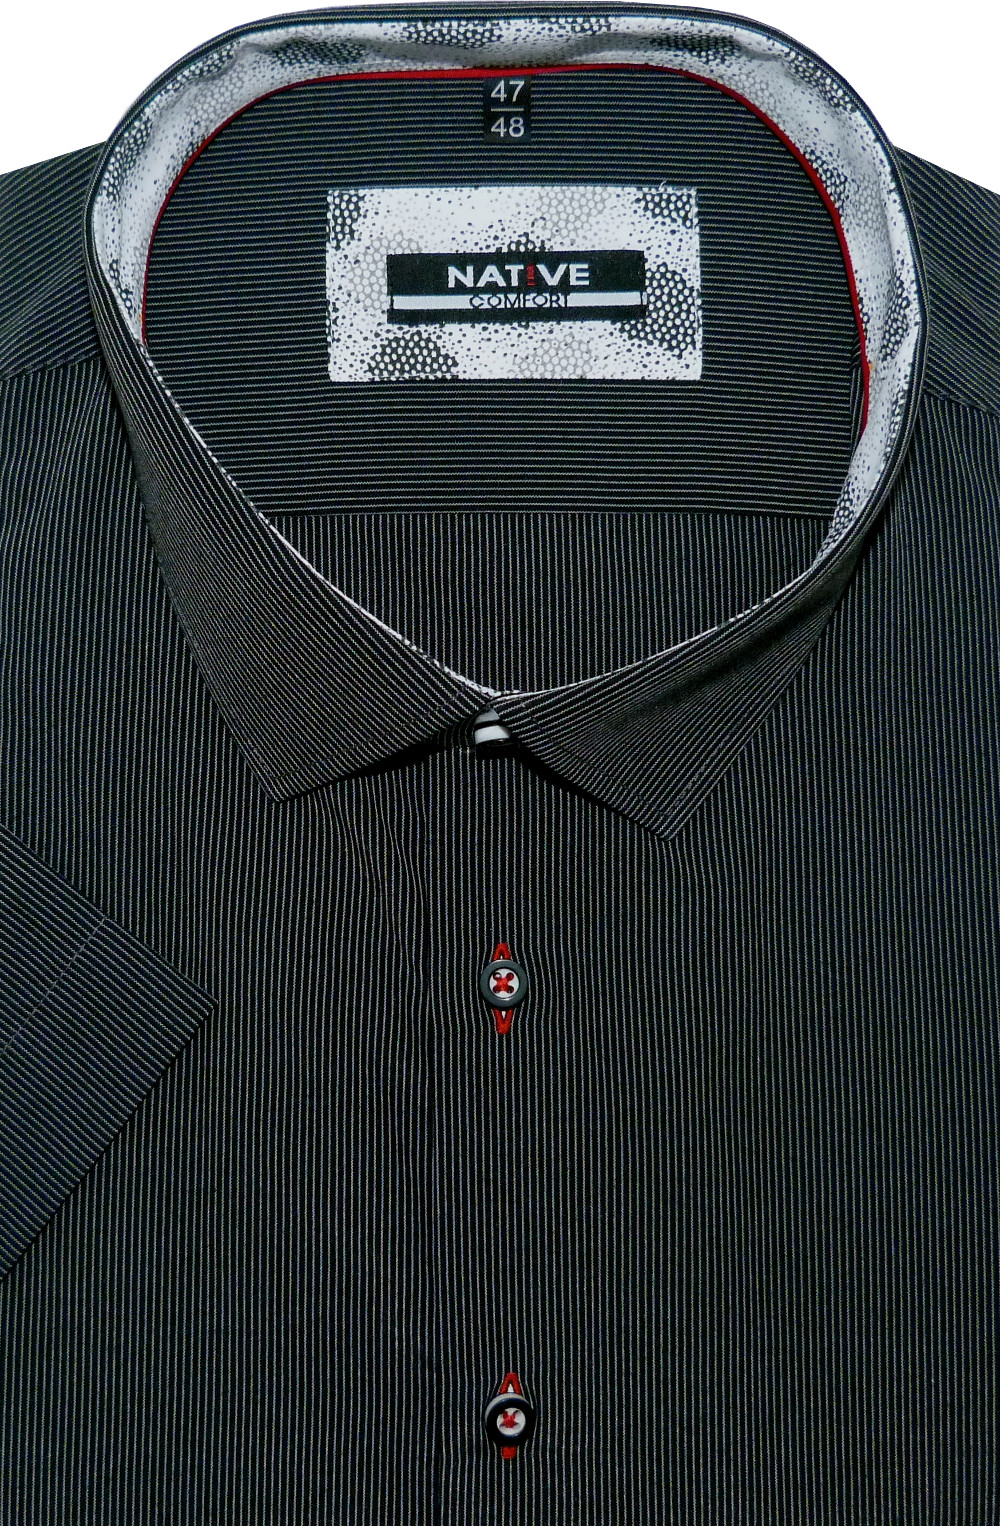 Pánská košile (černá) s krátkým rukávem, vel. 43/44 - N200/409